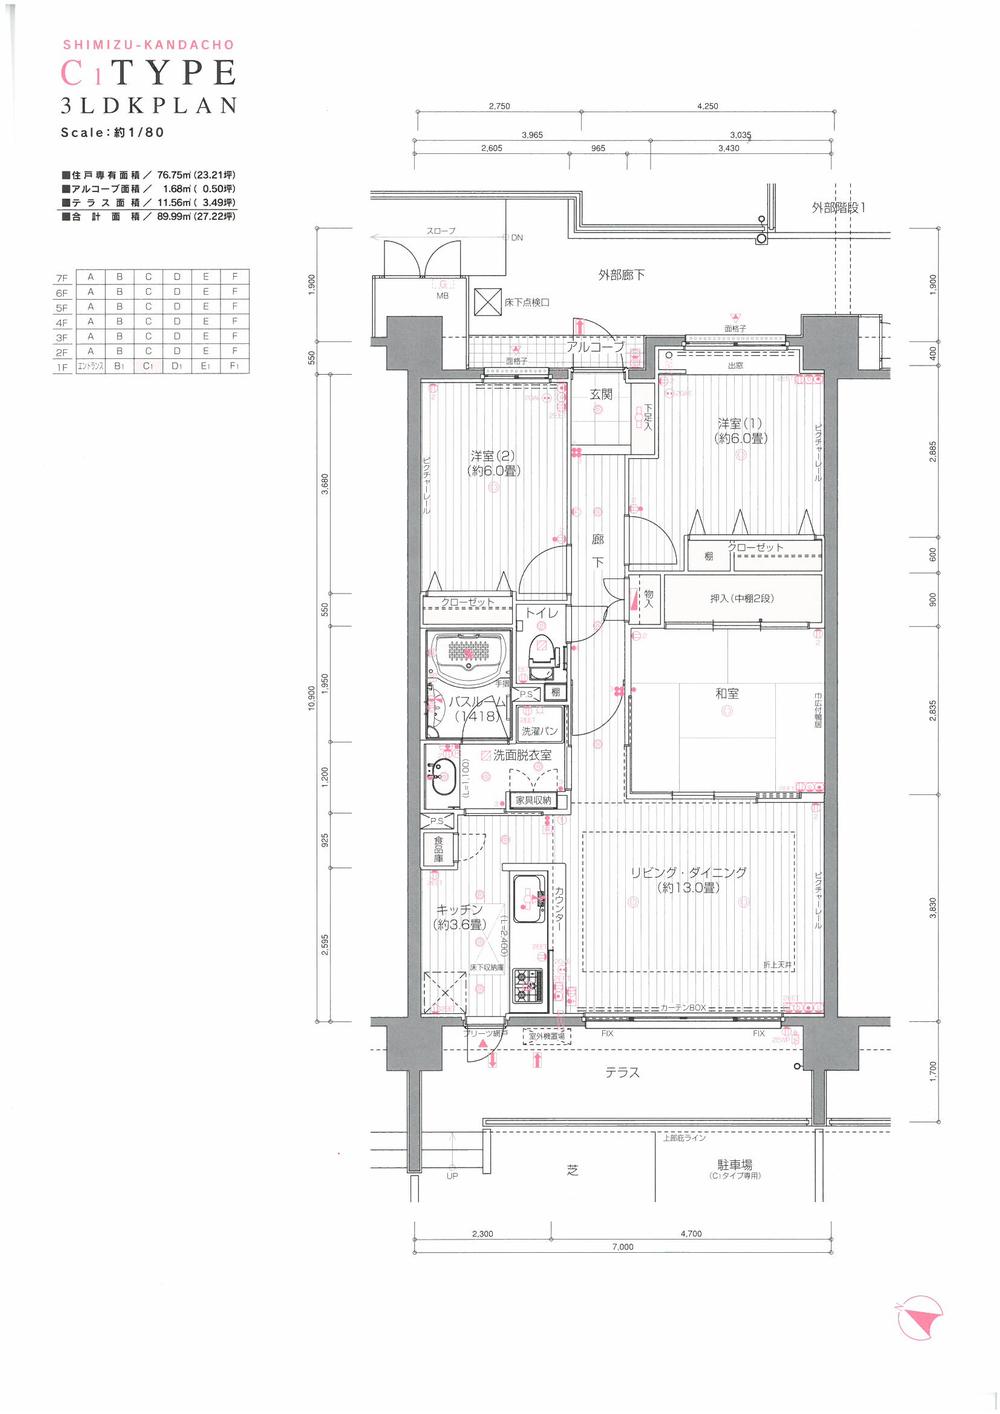 Floor plan. 3LDK, Price 18,800,000 yen, Occupied area 76.75 sq m